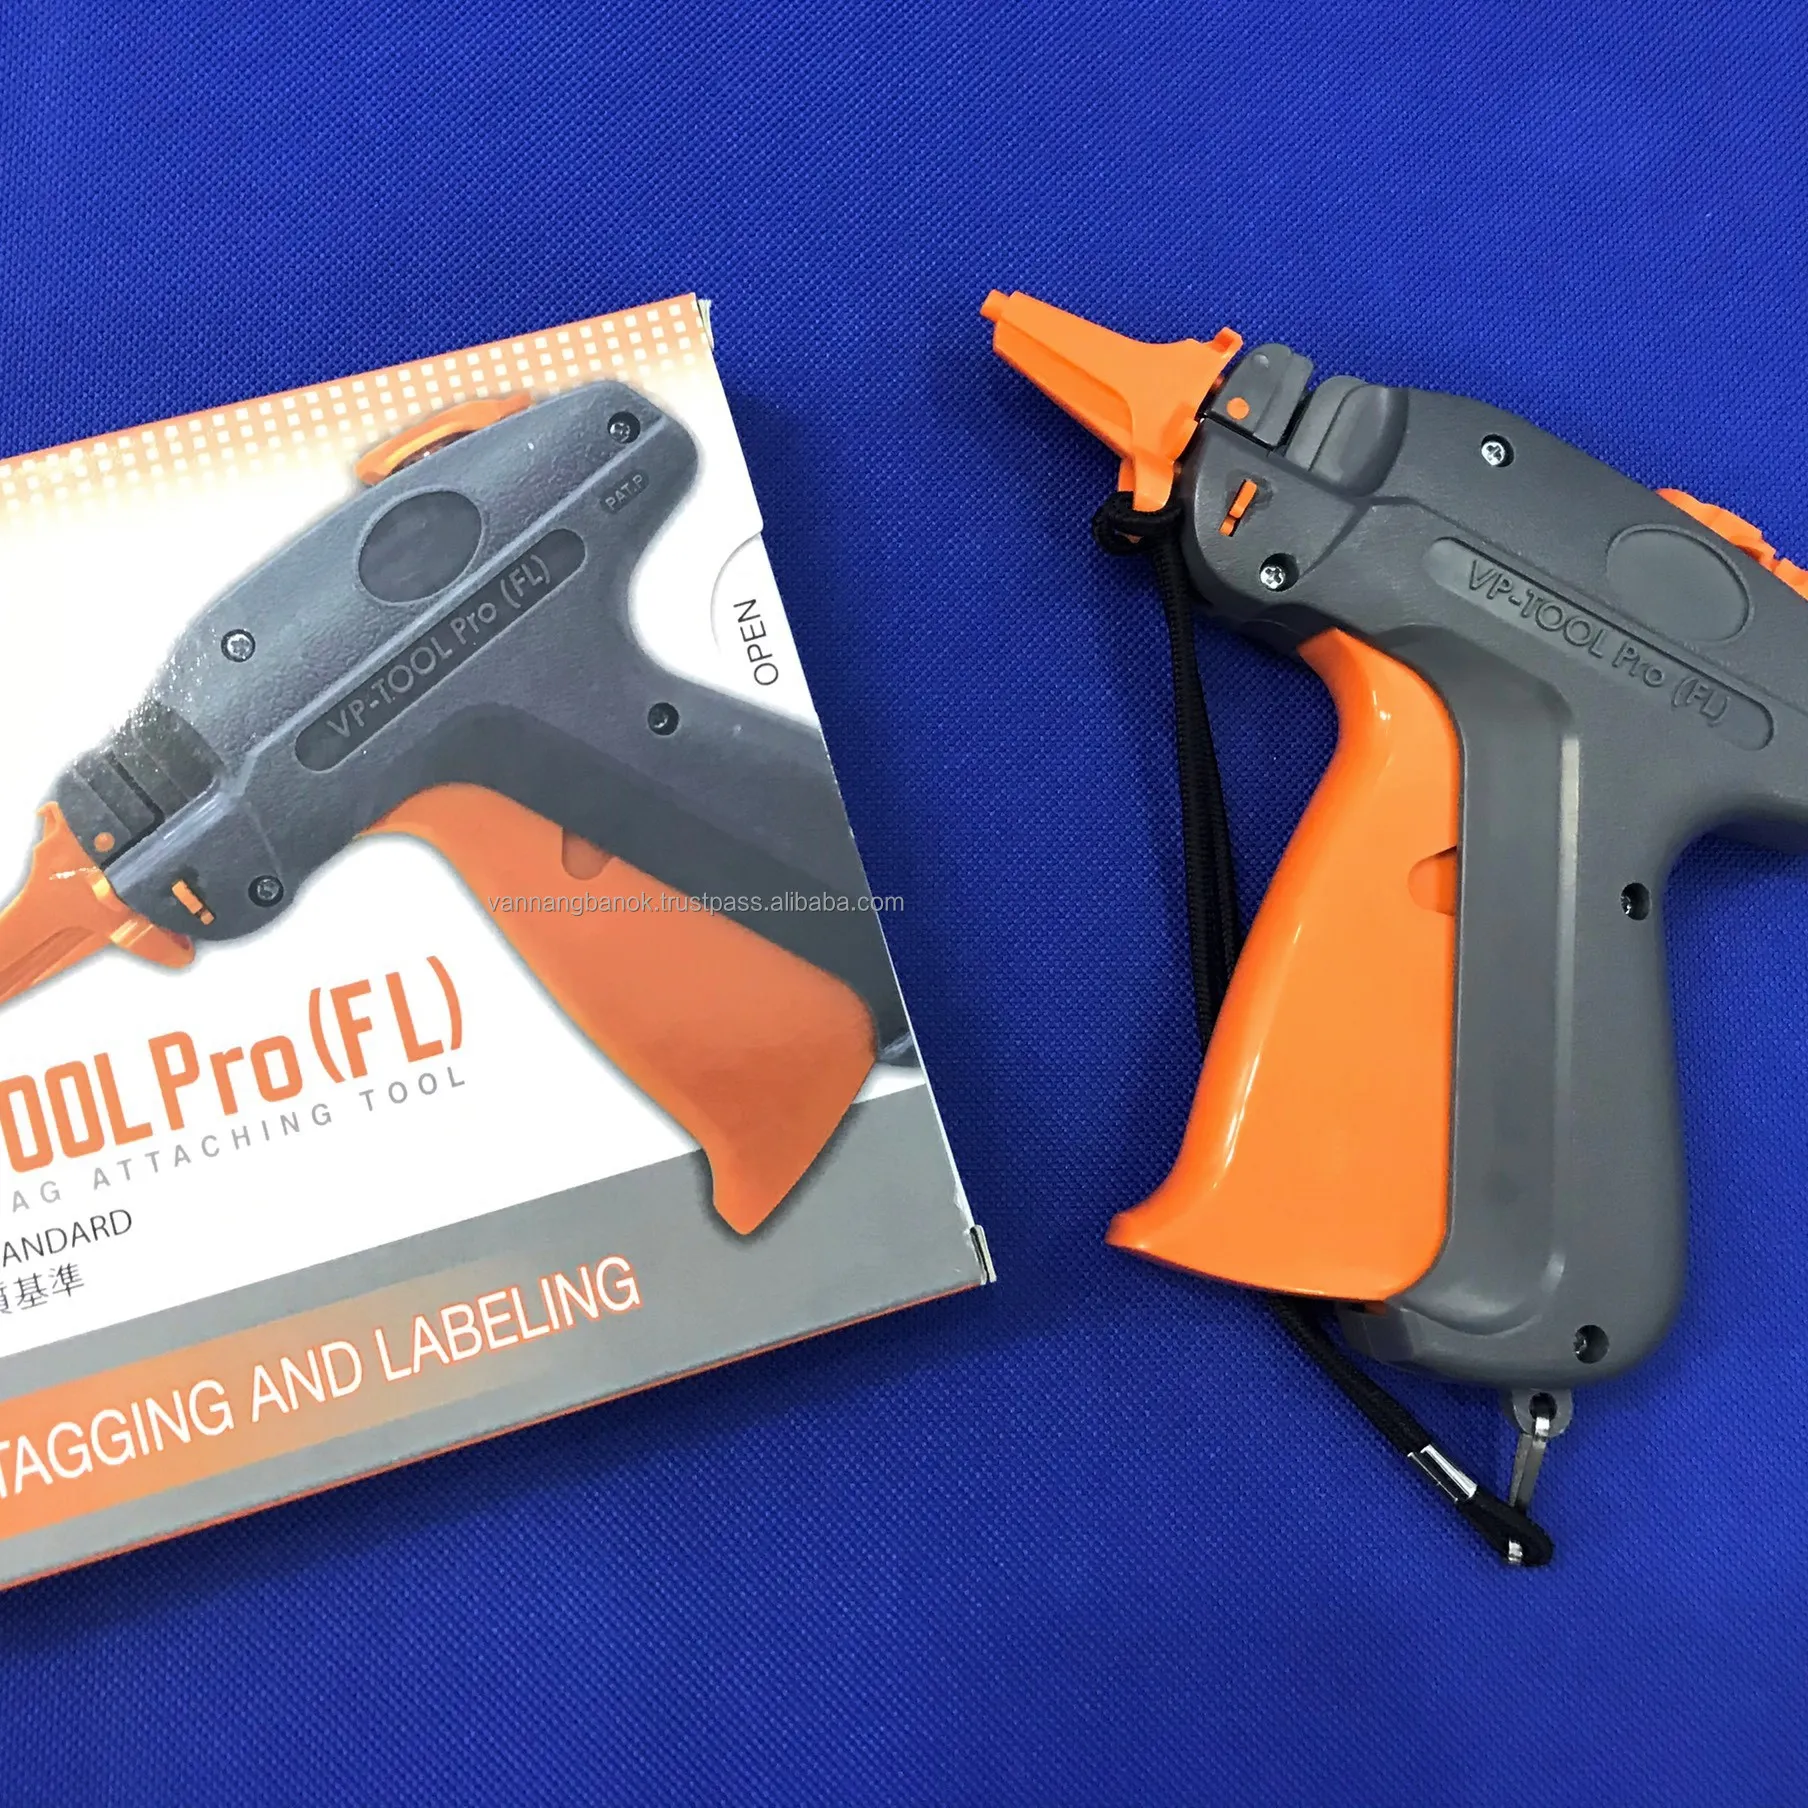 VP Tool Pro FL оранжевый цвет Современная устойчивая бирка использование пистолета с длинной и тонкой биркой булавка сделано в Вьетнаме высокое японское качество